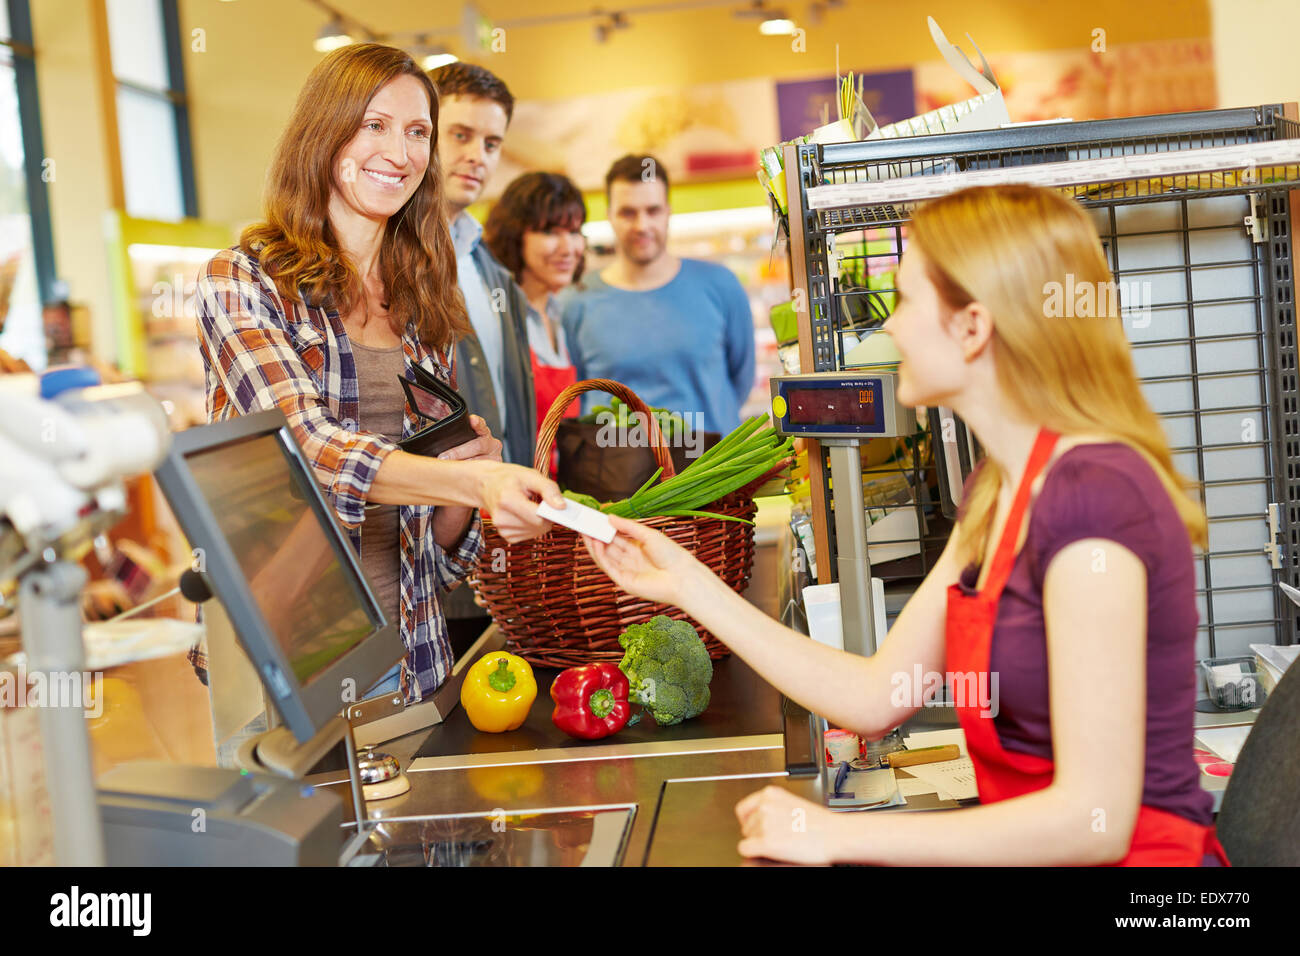 Femme de payer avec sa carte EC at supermarket checkout Banque D'Images